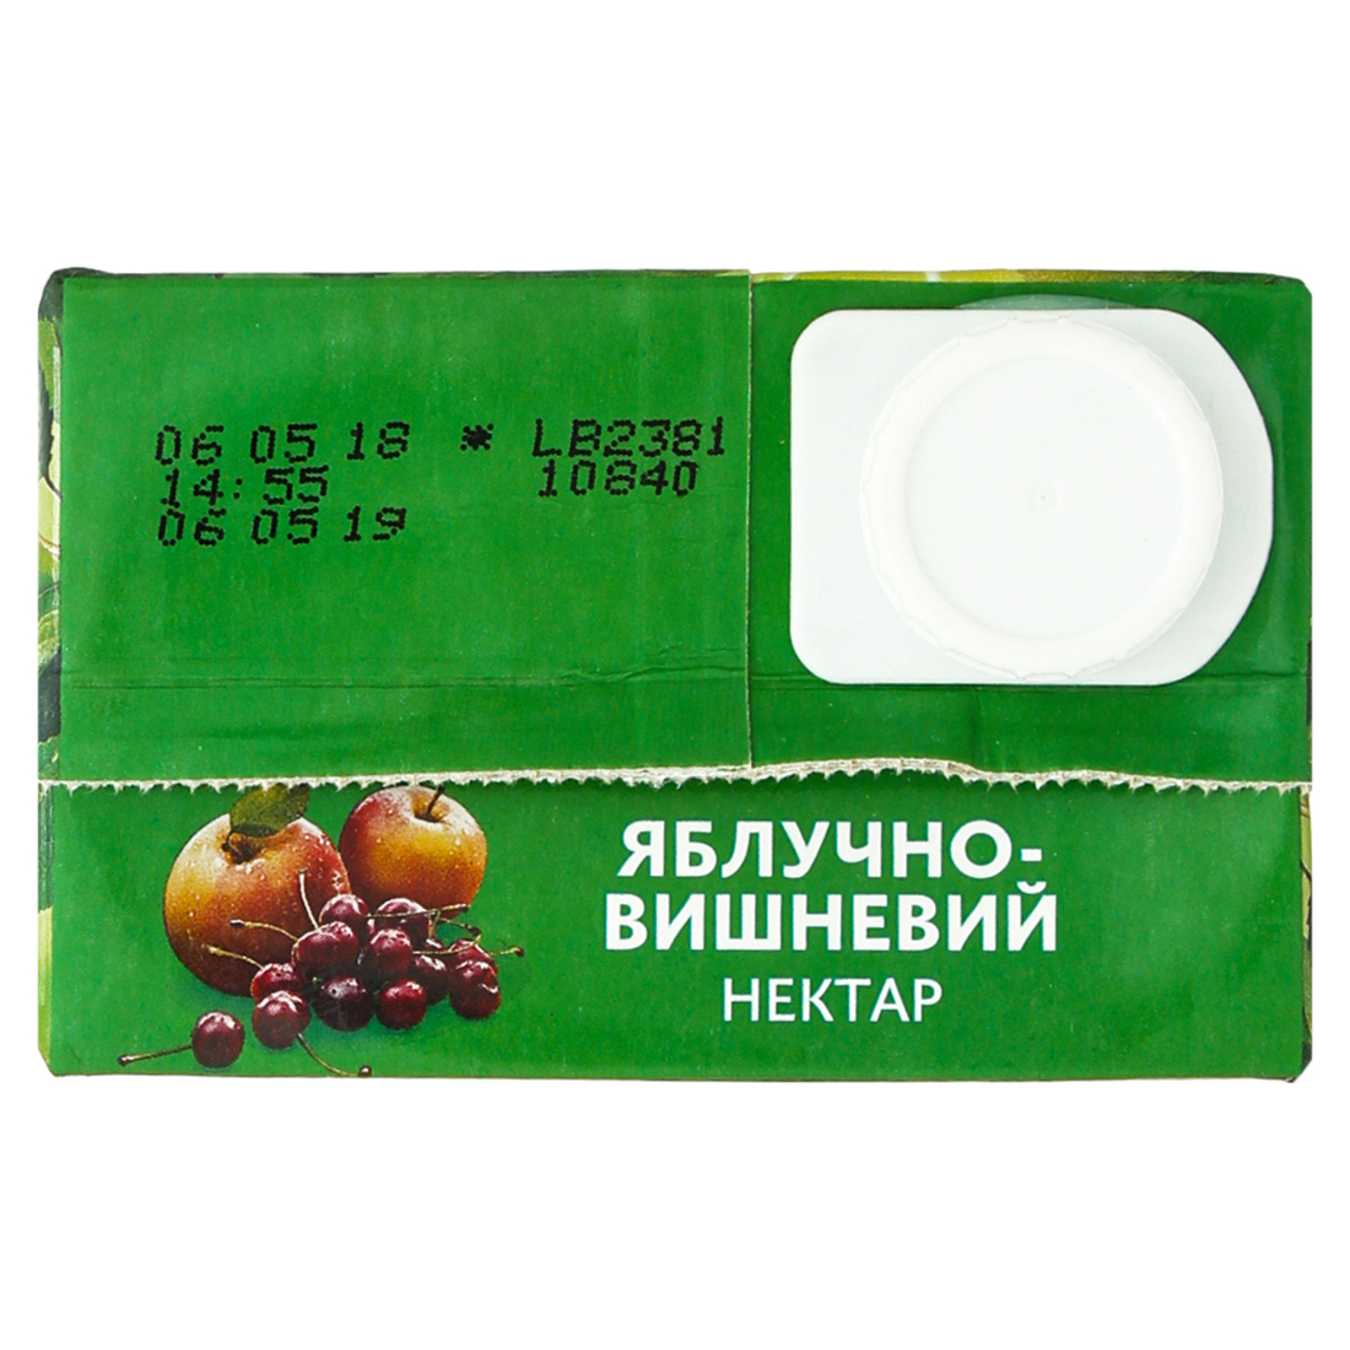 Нектар Садочок Яблочно-вишневый 0,95л 6